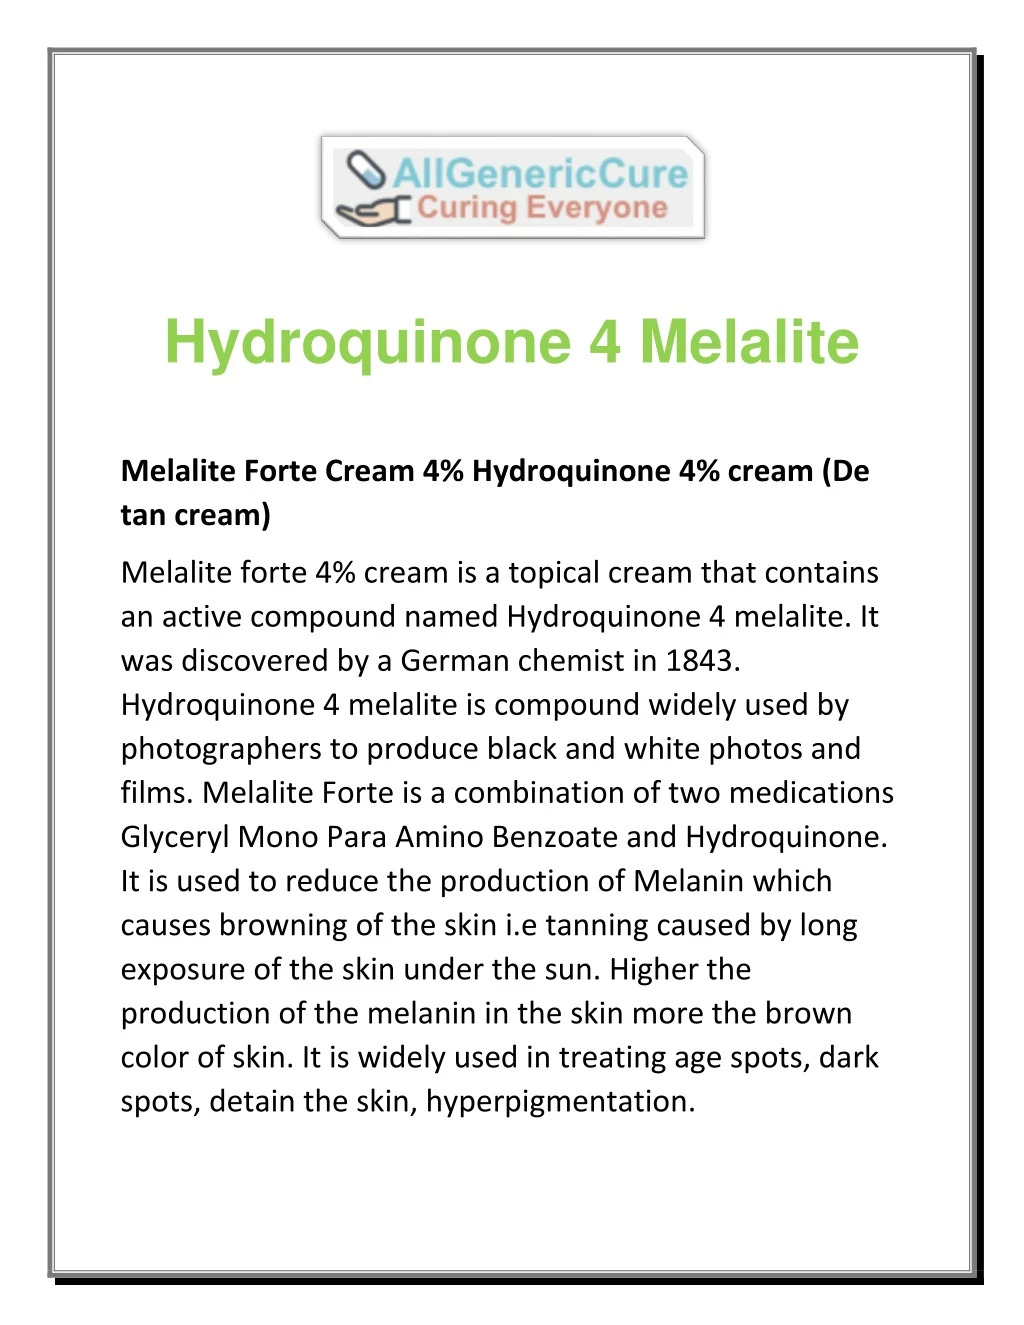 hydroquinone 4 melalite